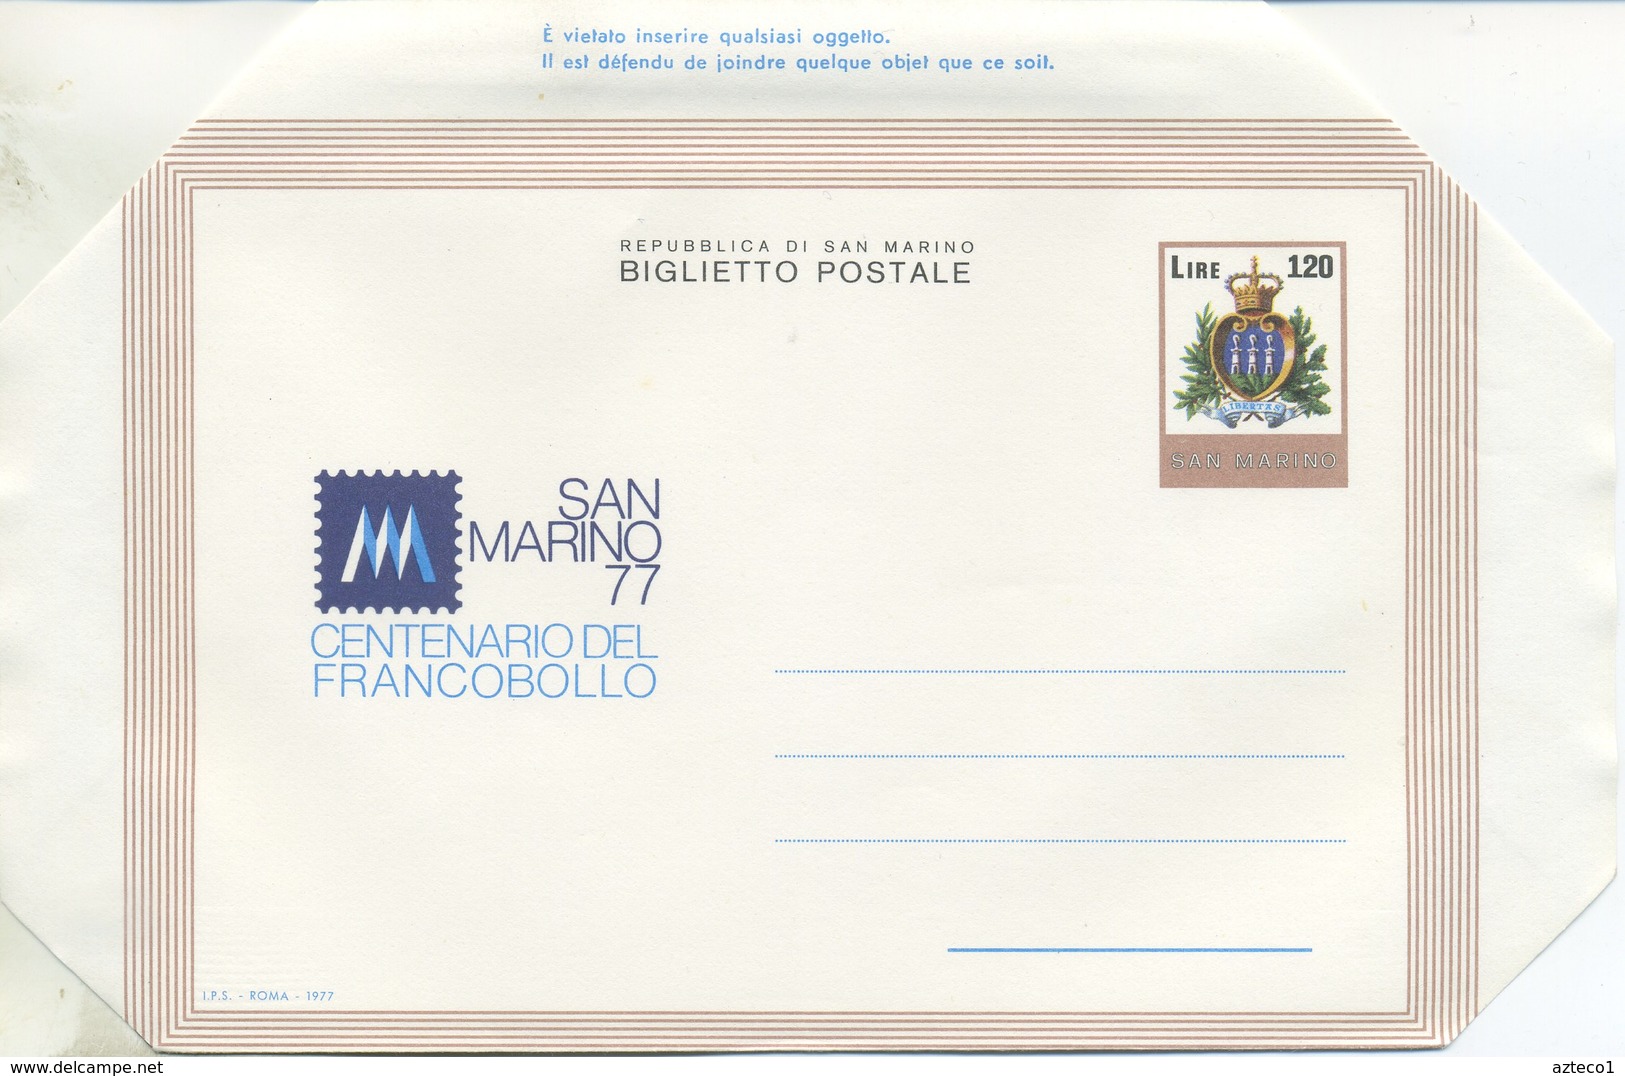 SAN MARINO - BIGLIETTO POSTALE 1977 - CENTENARIO DEL FRANCOBOLLO - NUOVO - Interi Postali